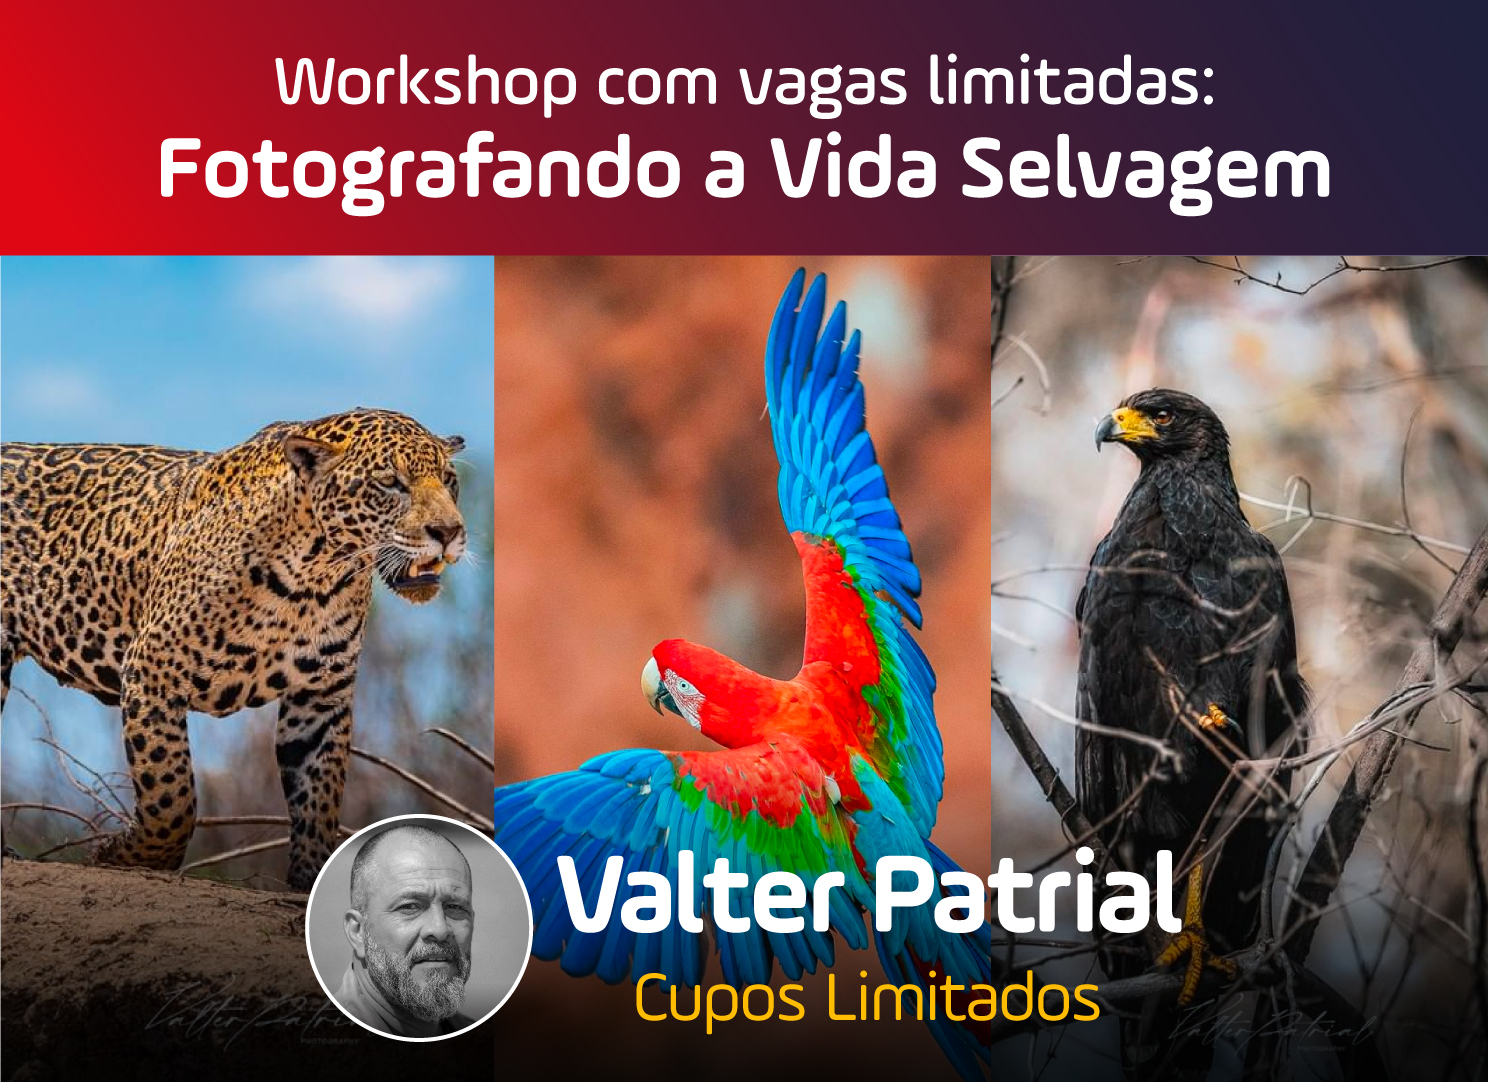 Workshop de vida salvaje en la Falcoaria de Foz con Valter Patrial